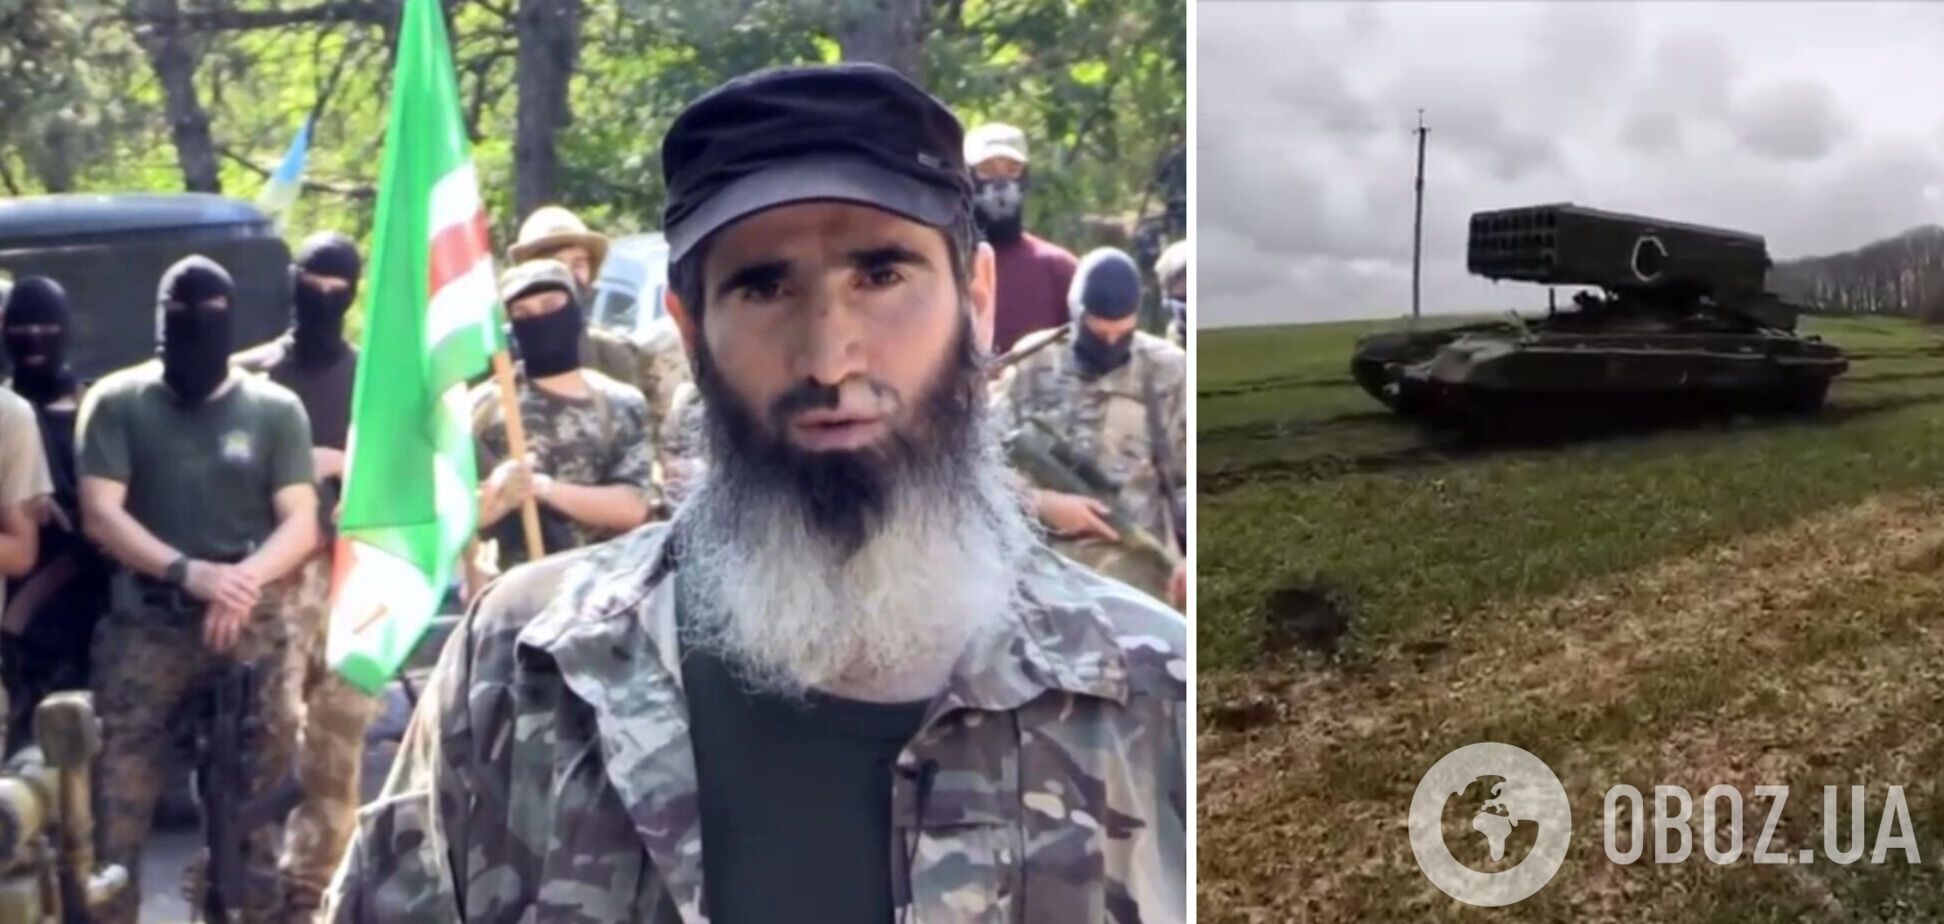 Чеченские добровольцы, которые воюют за Украину, захватили российский 'Солнцепек'. Видео